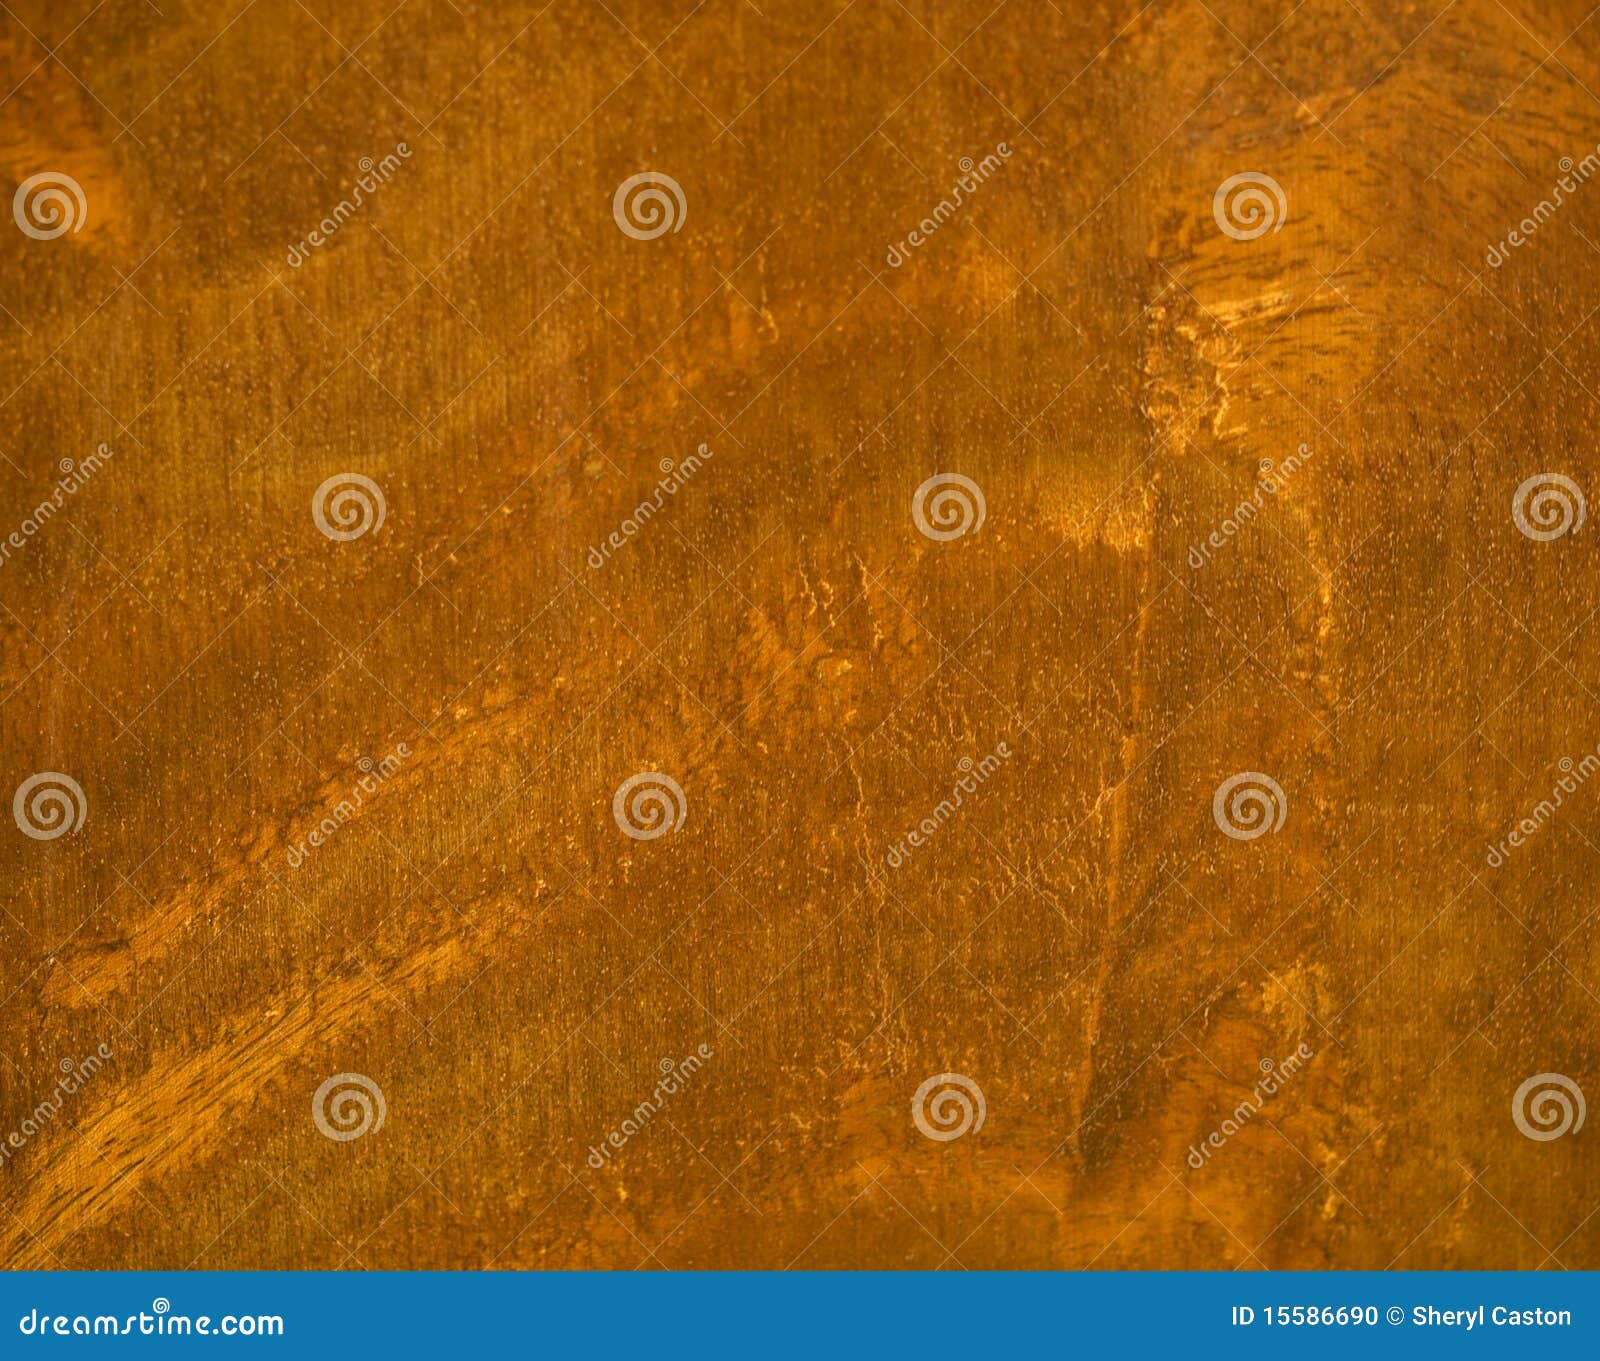 mahogany natural woodgrain timber texture